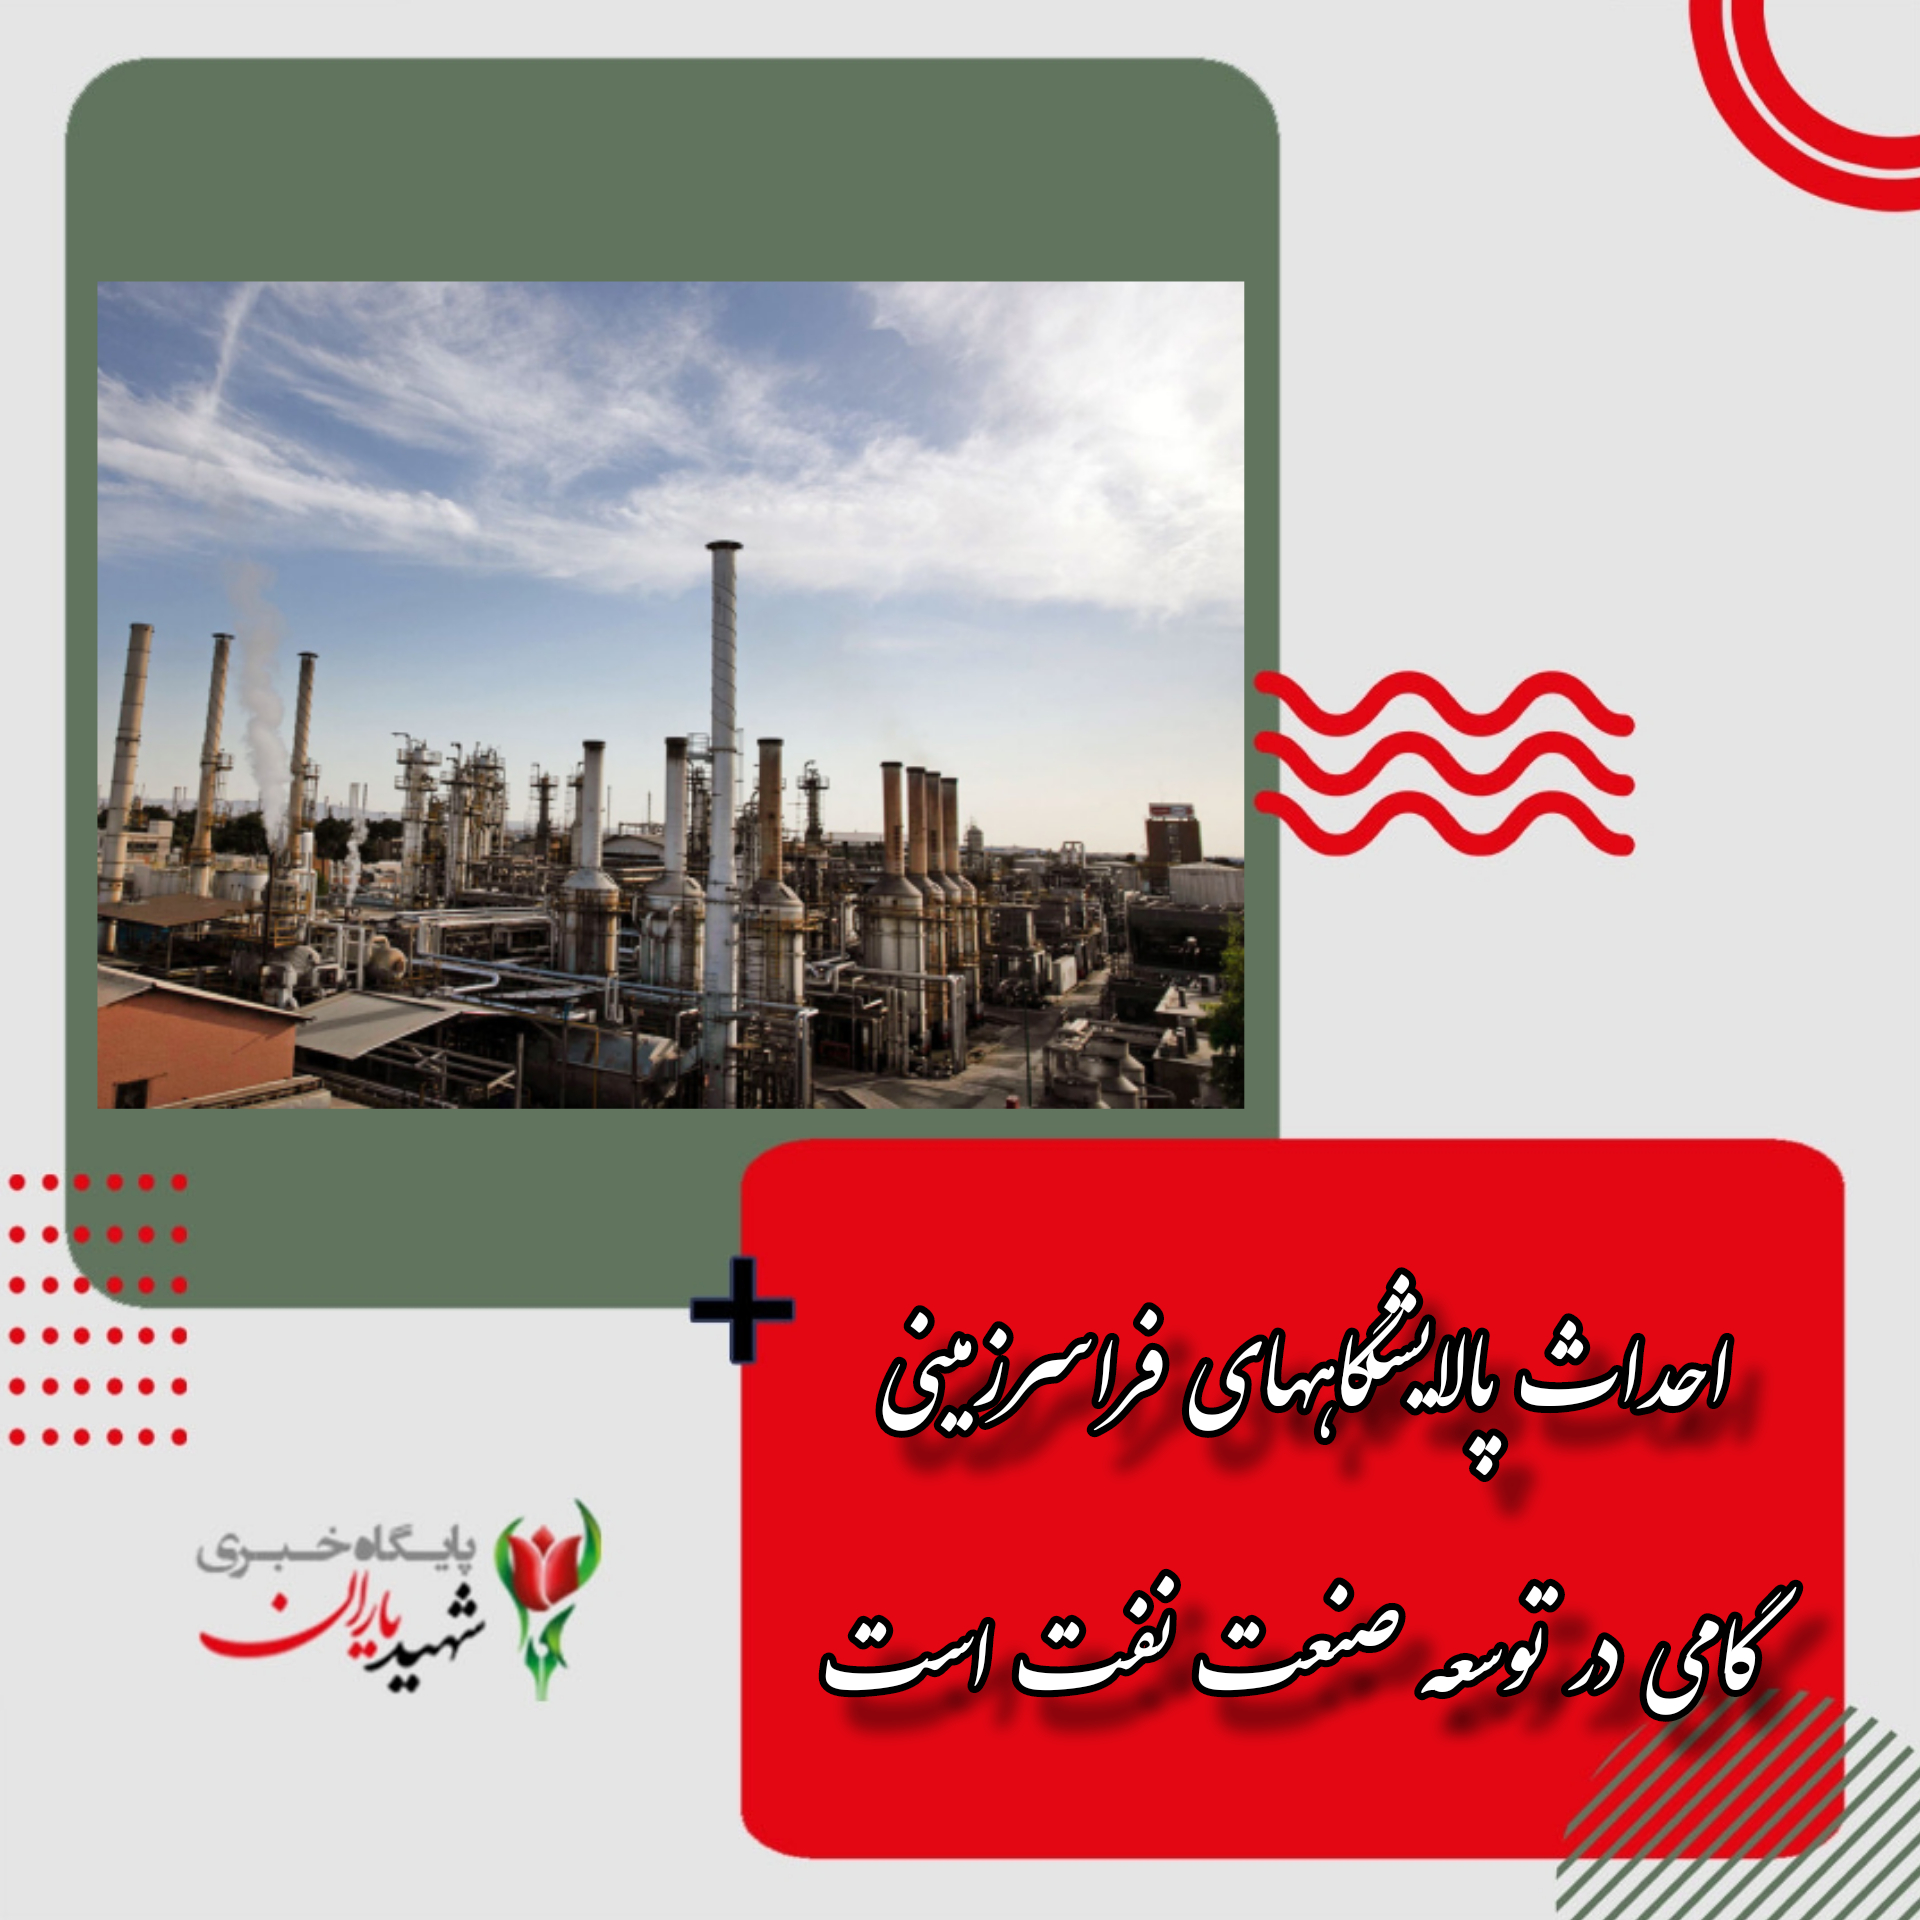 احداث پالایشگاههای فراسرزمینی گامی در توسعه صنعت نفت است